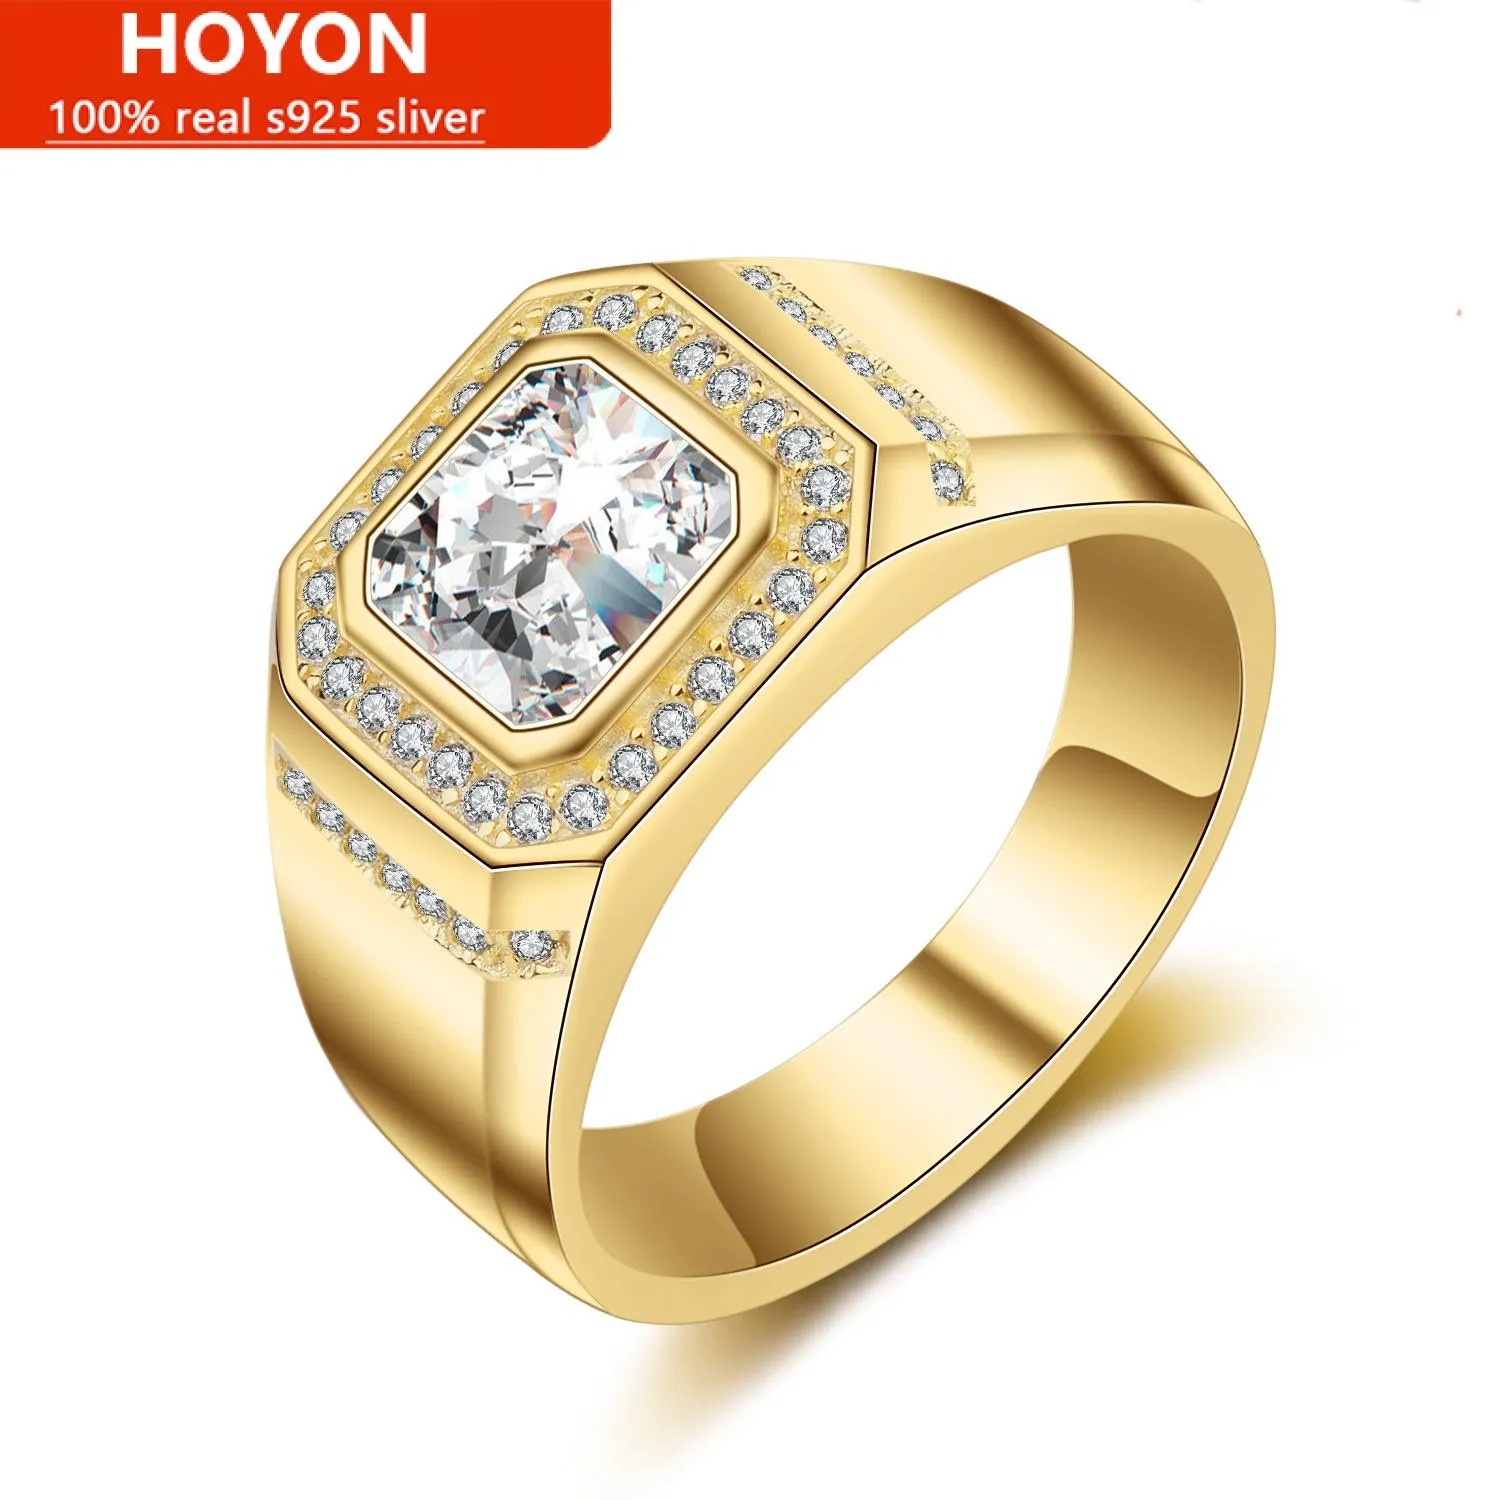 Hoyon 14Kイエローゴールドカラー長方形カットシミュレーションダイヤモンドリング女性女性ホワイトゴールドコーティングAAAジルコンファインジュエリーギフト